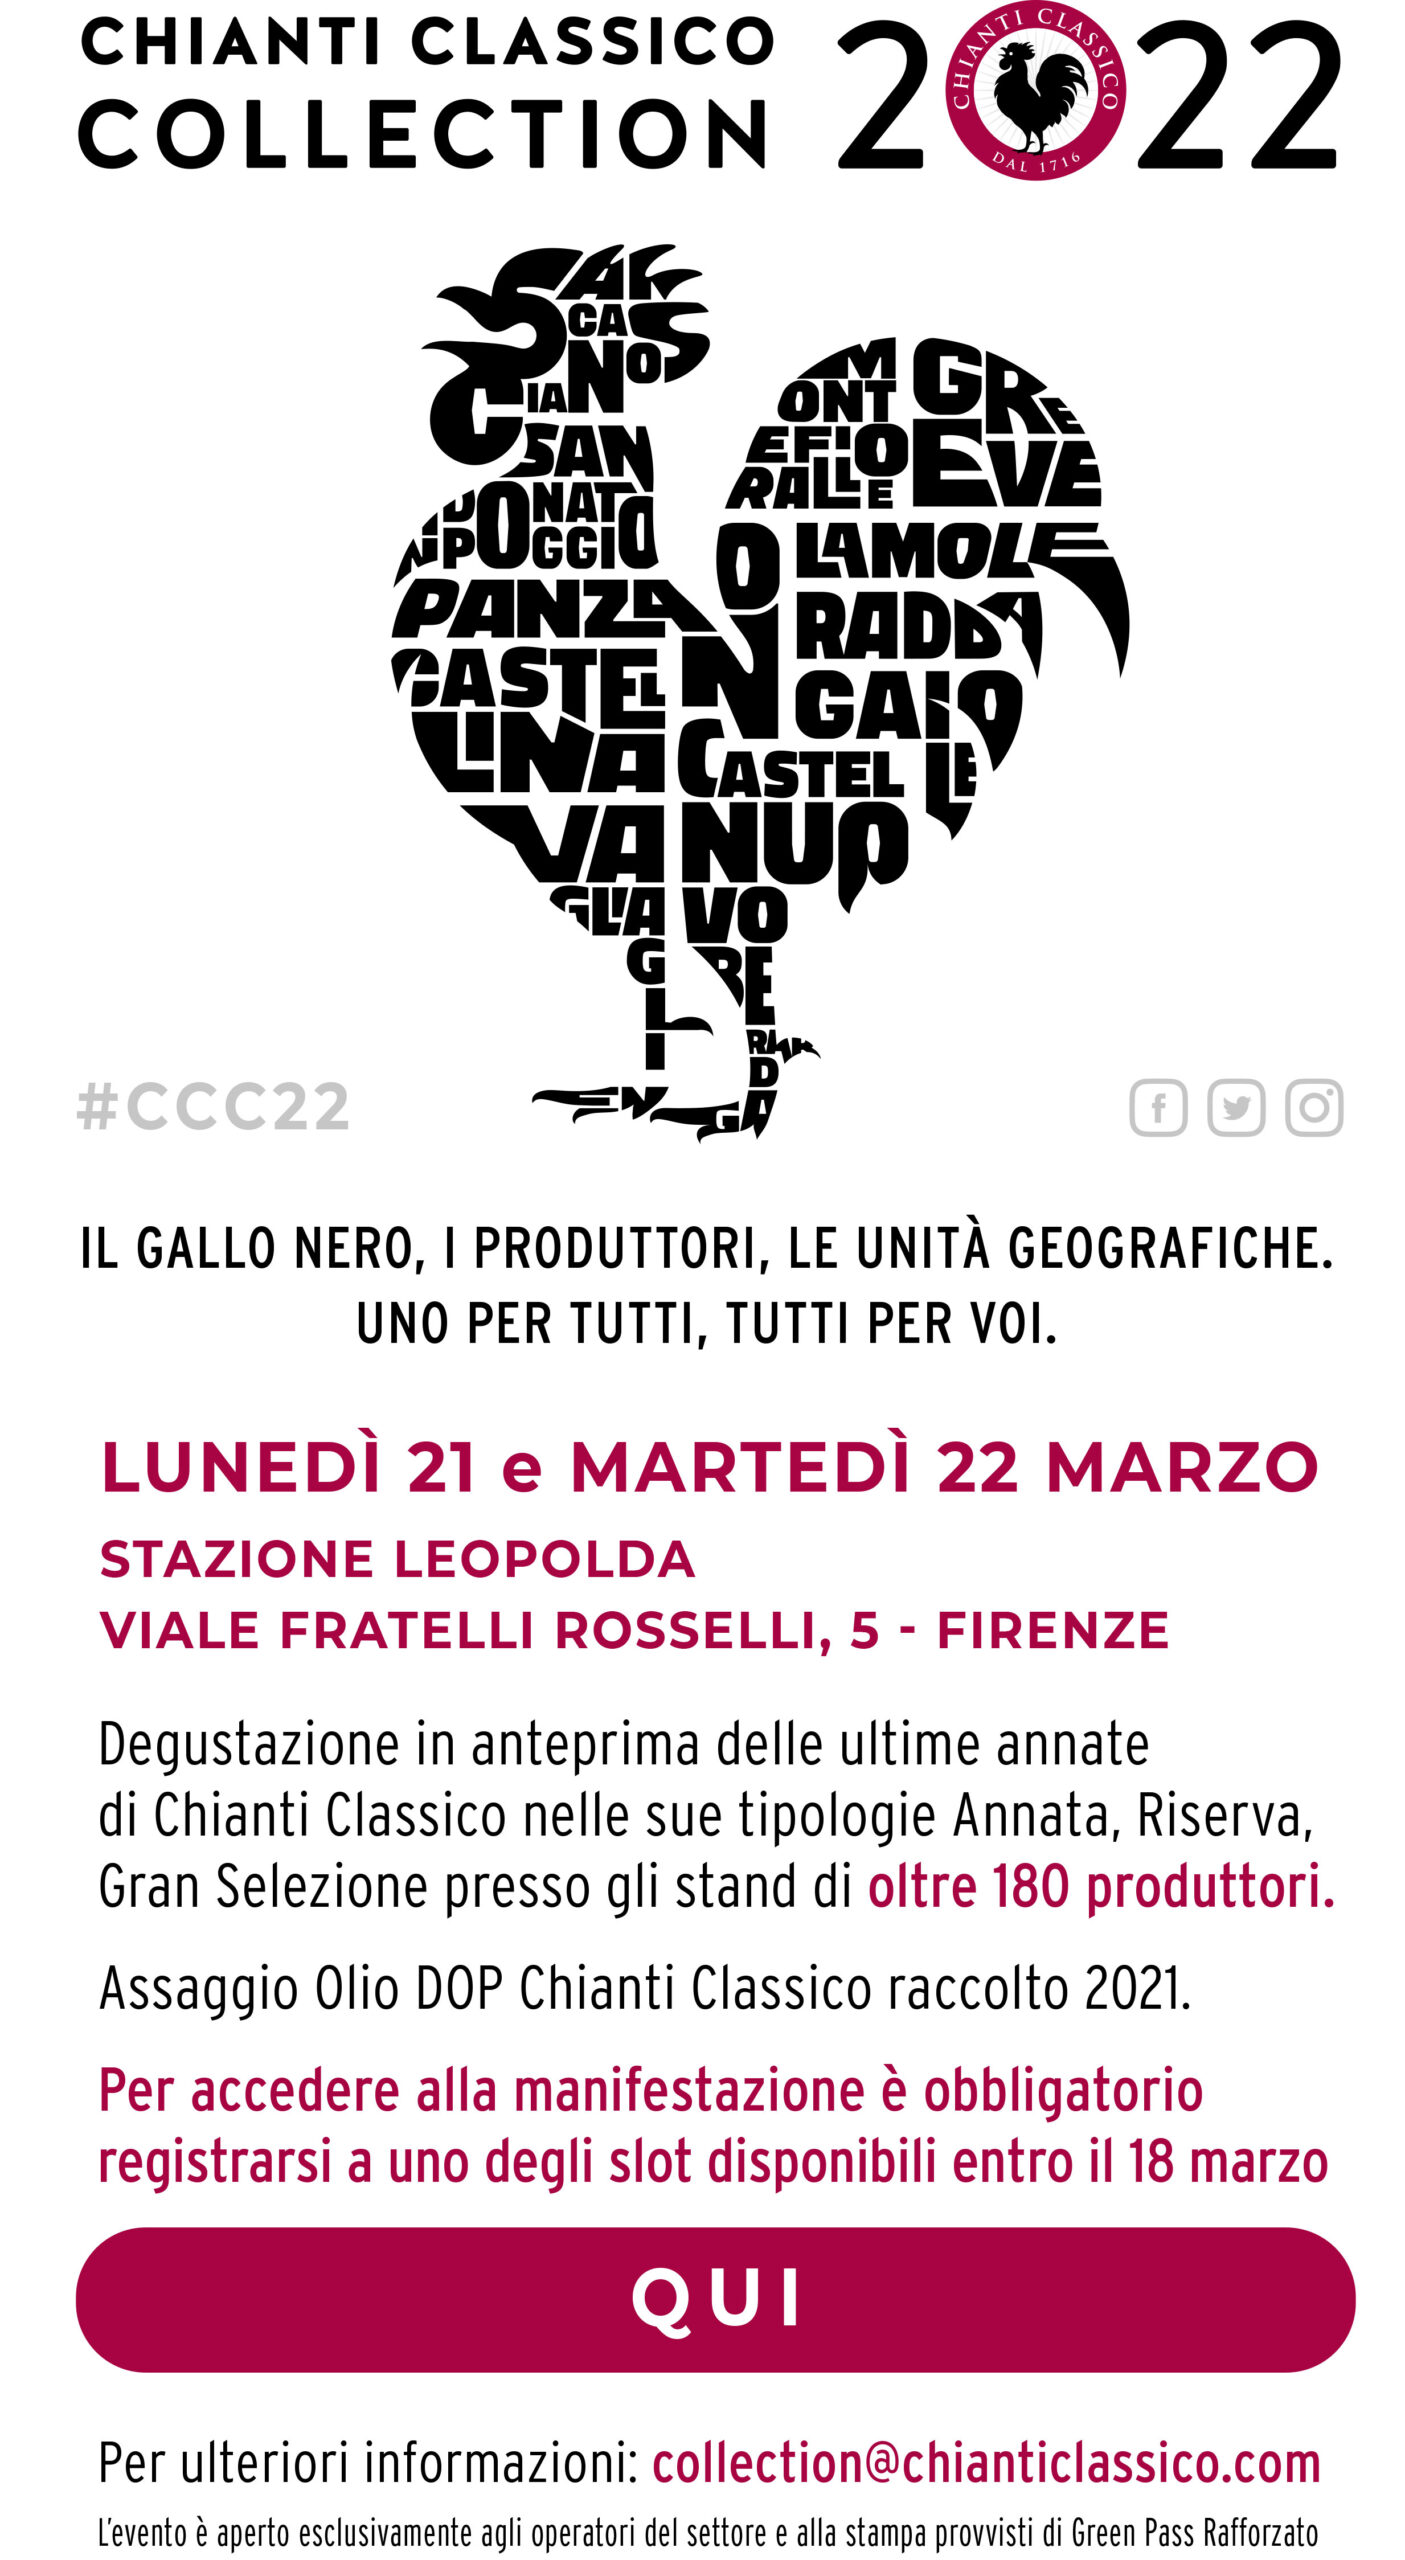 prenotazione collection scaled - march - Chianti Classico wine shop Greve